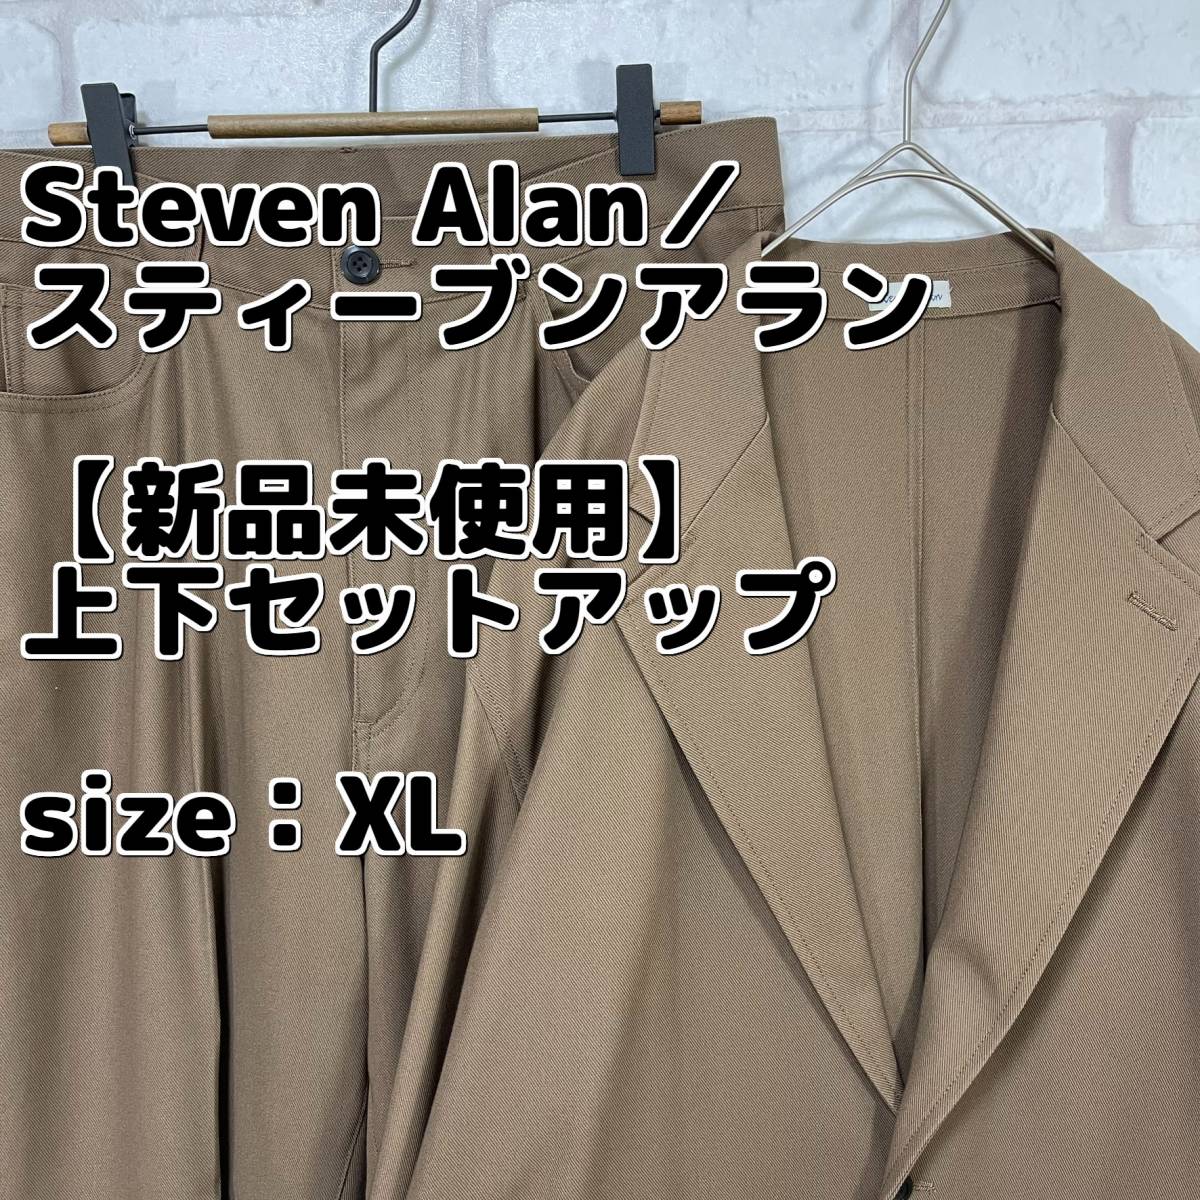 【新品未使用】Steven Alan／スティーブンアラン 上下 セットアップ ジャケット パンツ スーツ 入学式 卒業式 入社式 新社会人_画像1